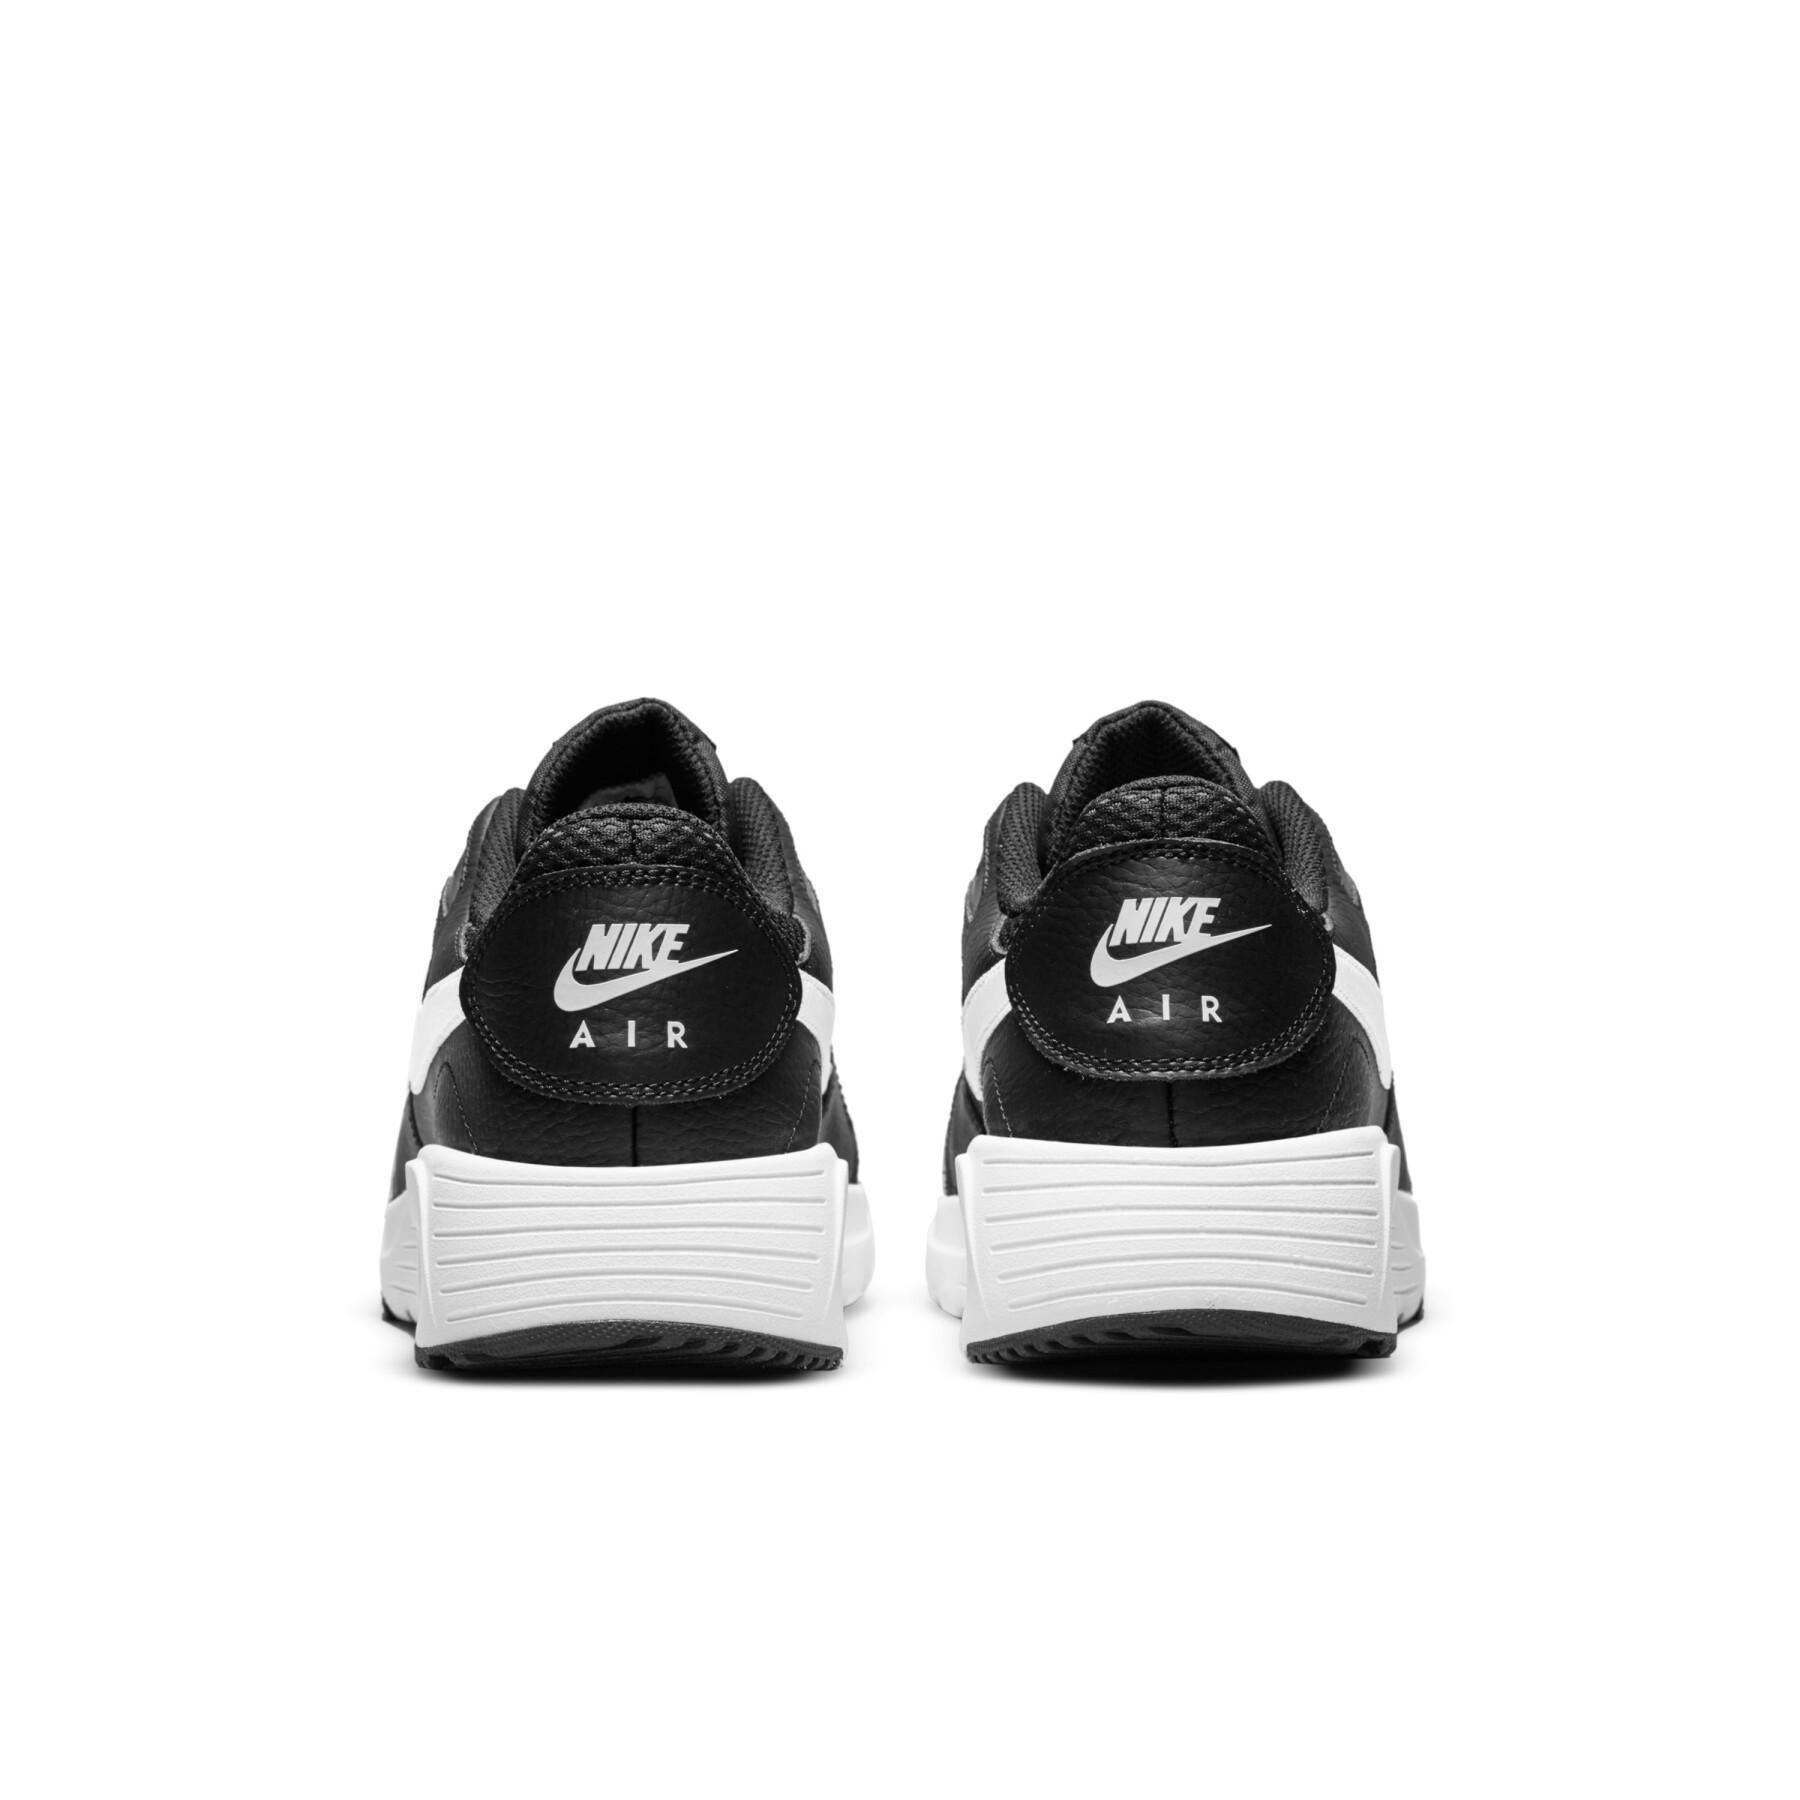 Sneakers Nike Air Max Sc